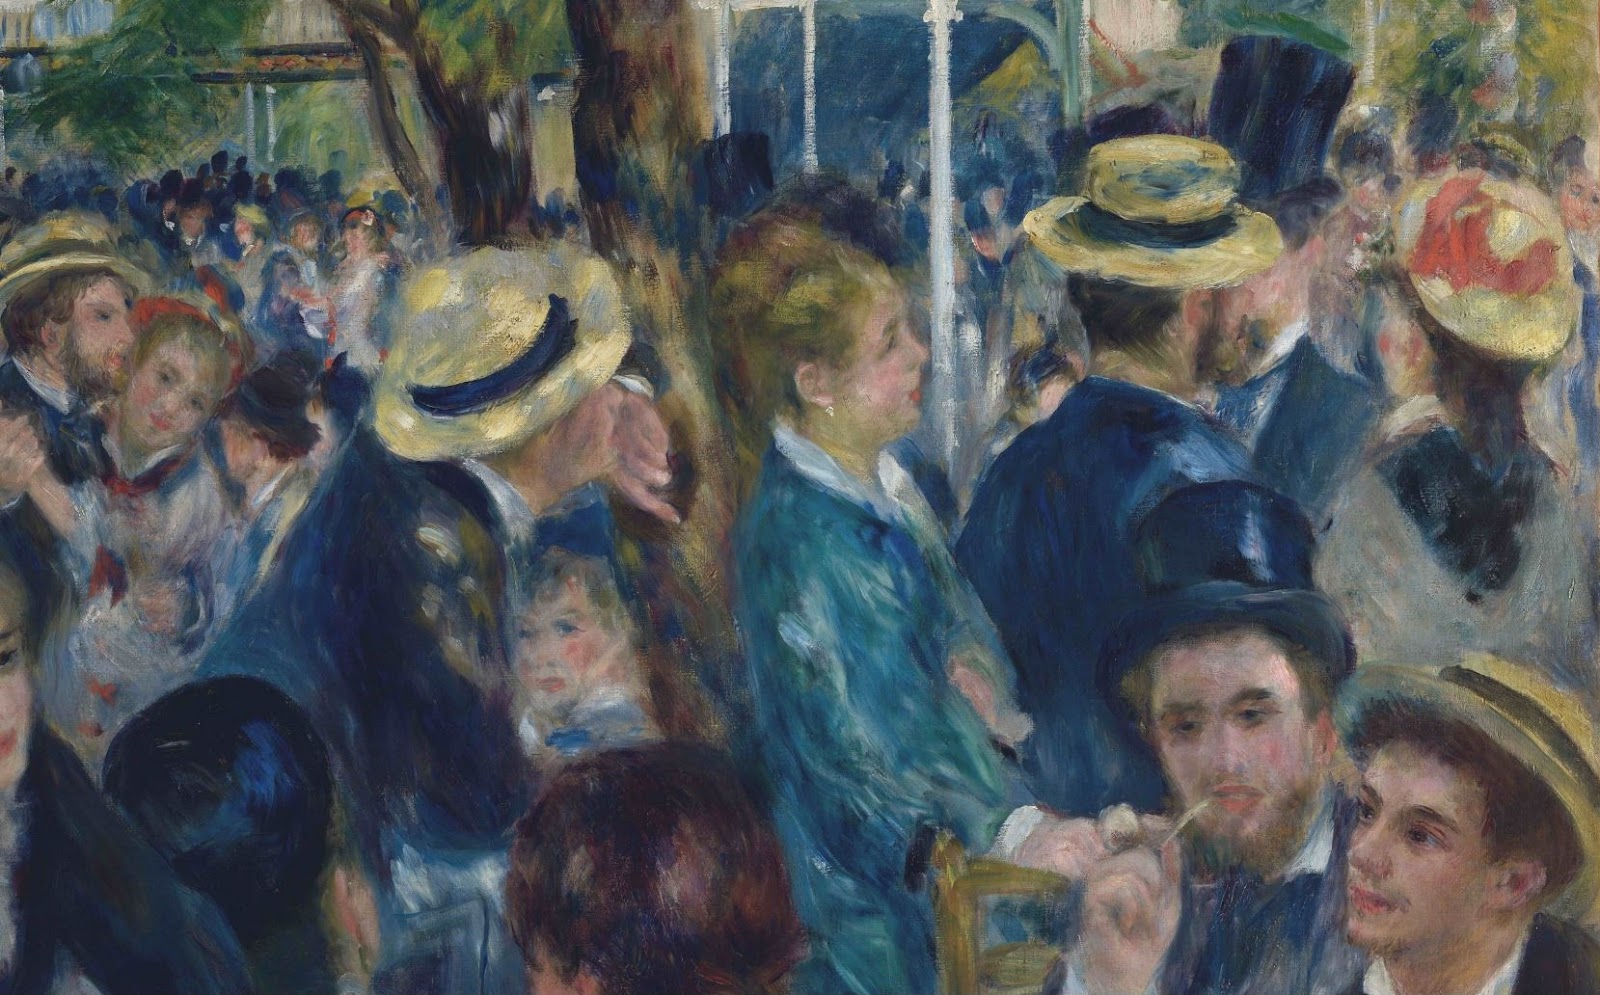 Pierre+Auguste+Renoir-1841-1-19 (445).JPG